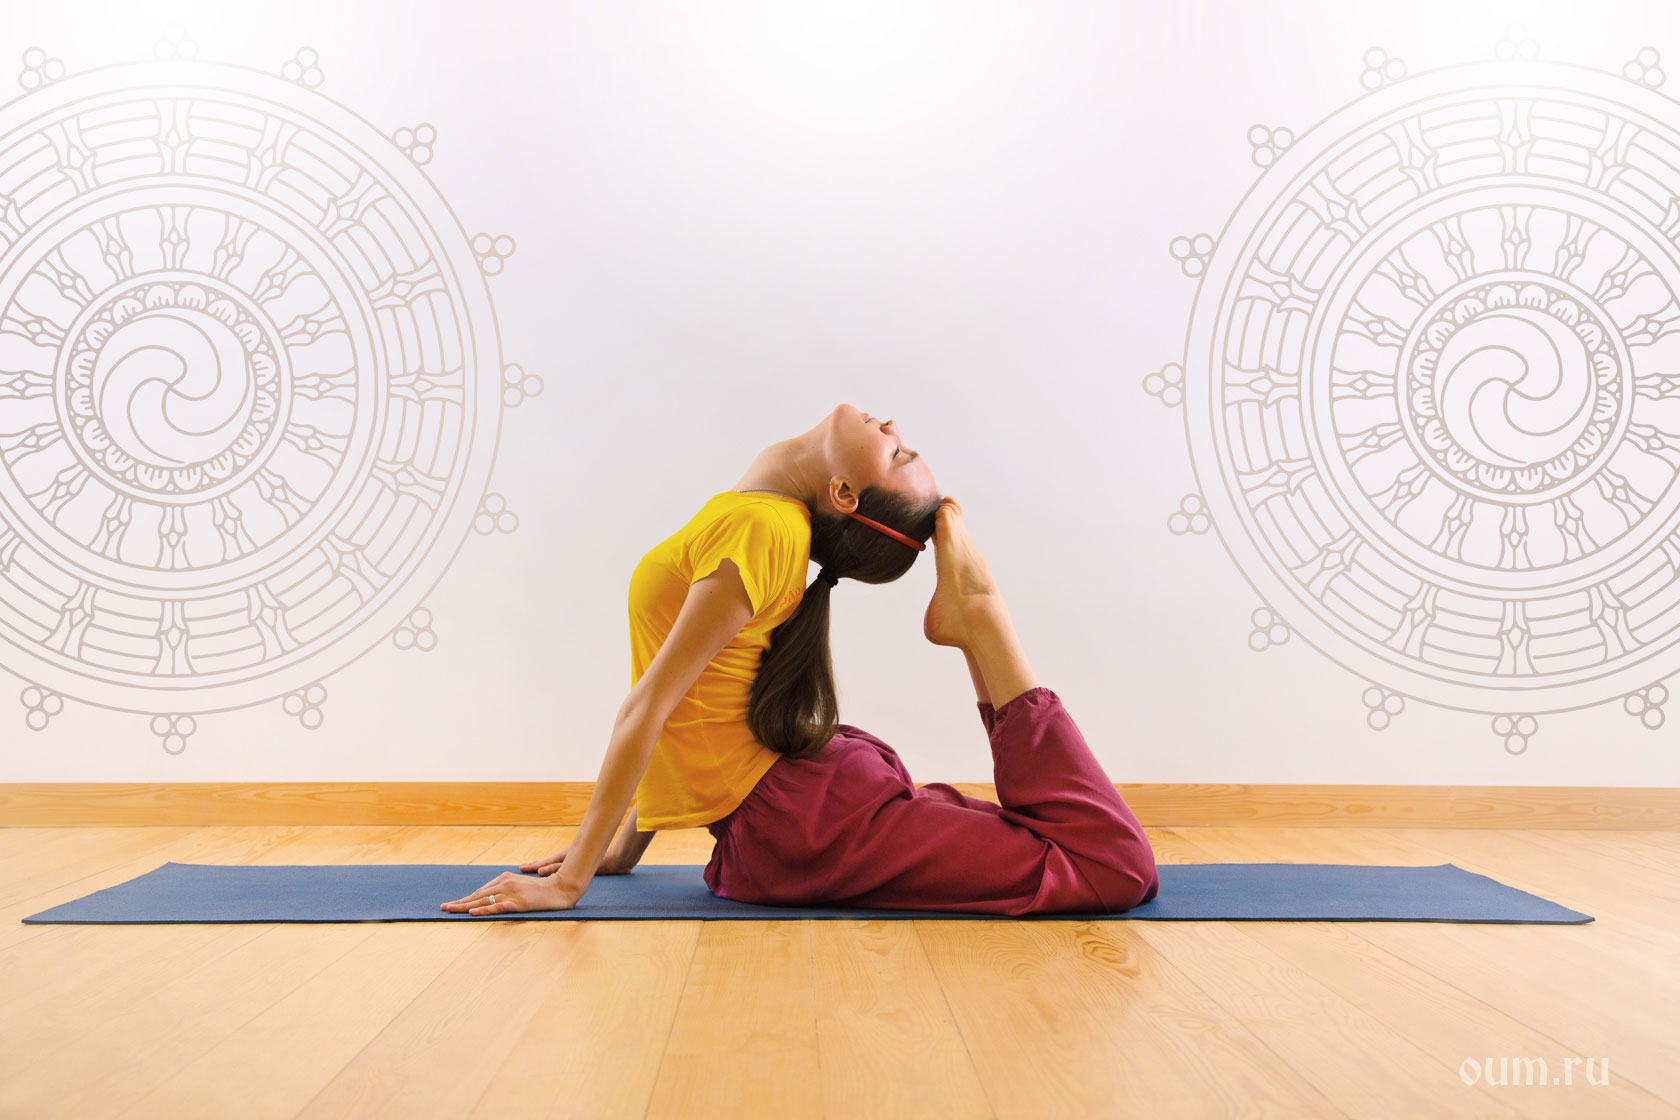 Медитация рождения. Хатха-йога ОУМ. Визитка преподавателя йоги. Визитка для учителя йоги. Йога преподаватель.